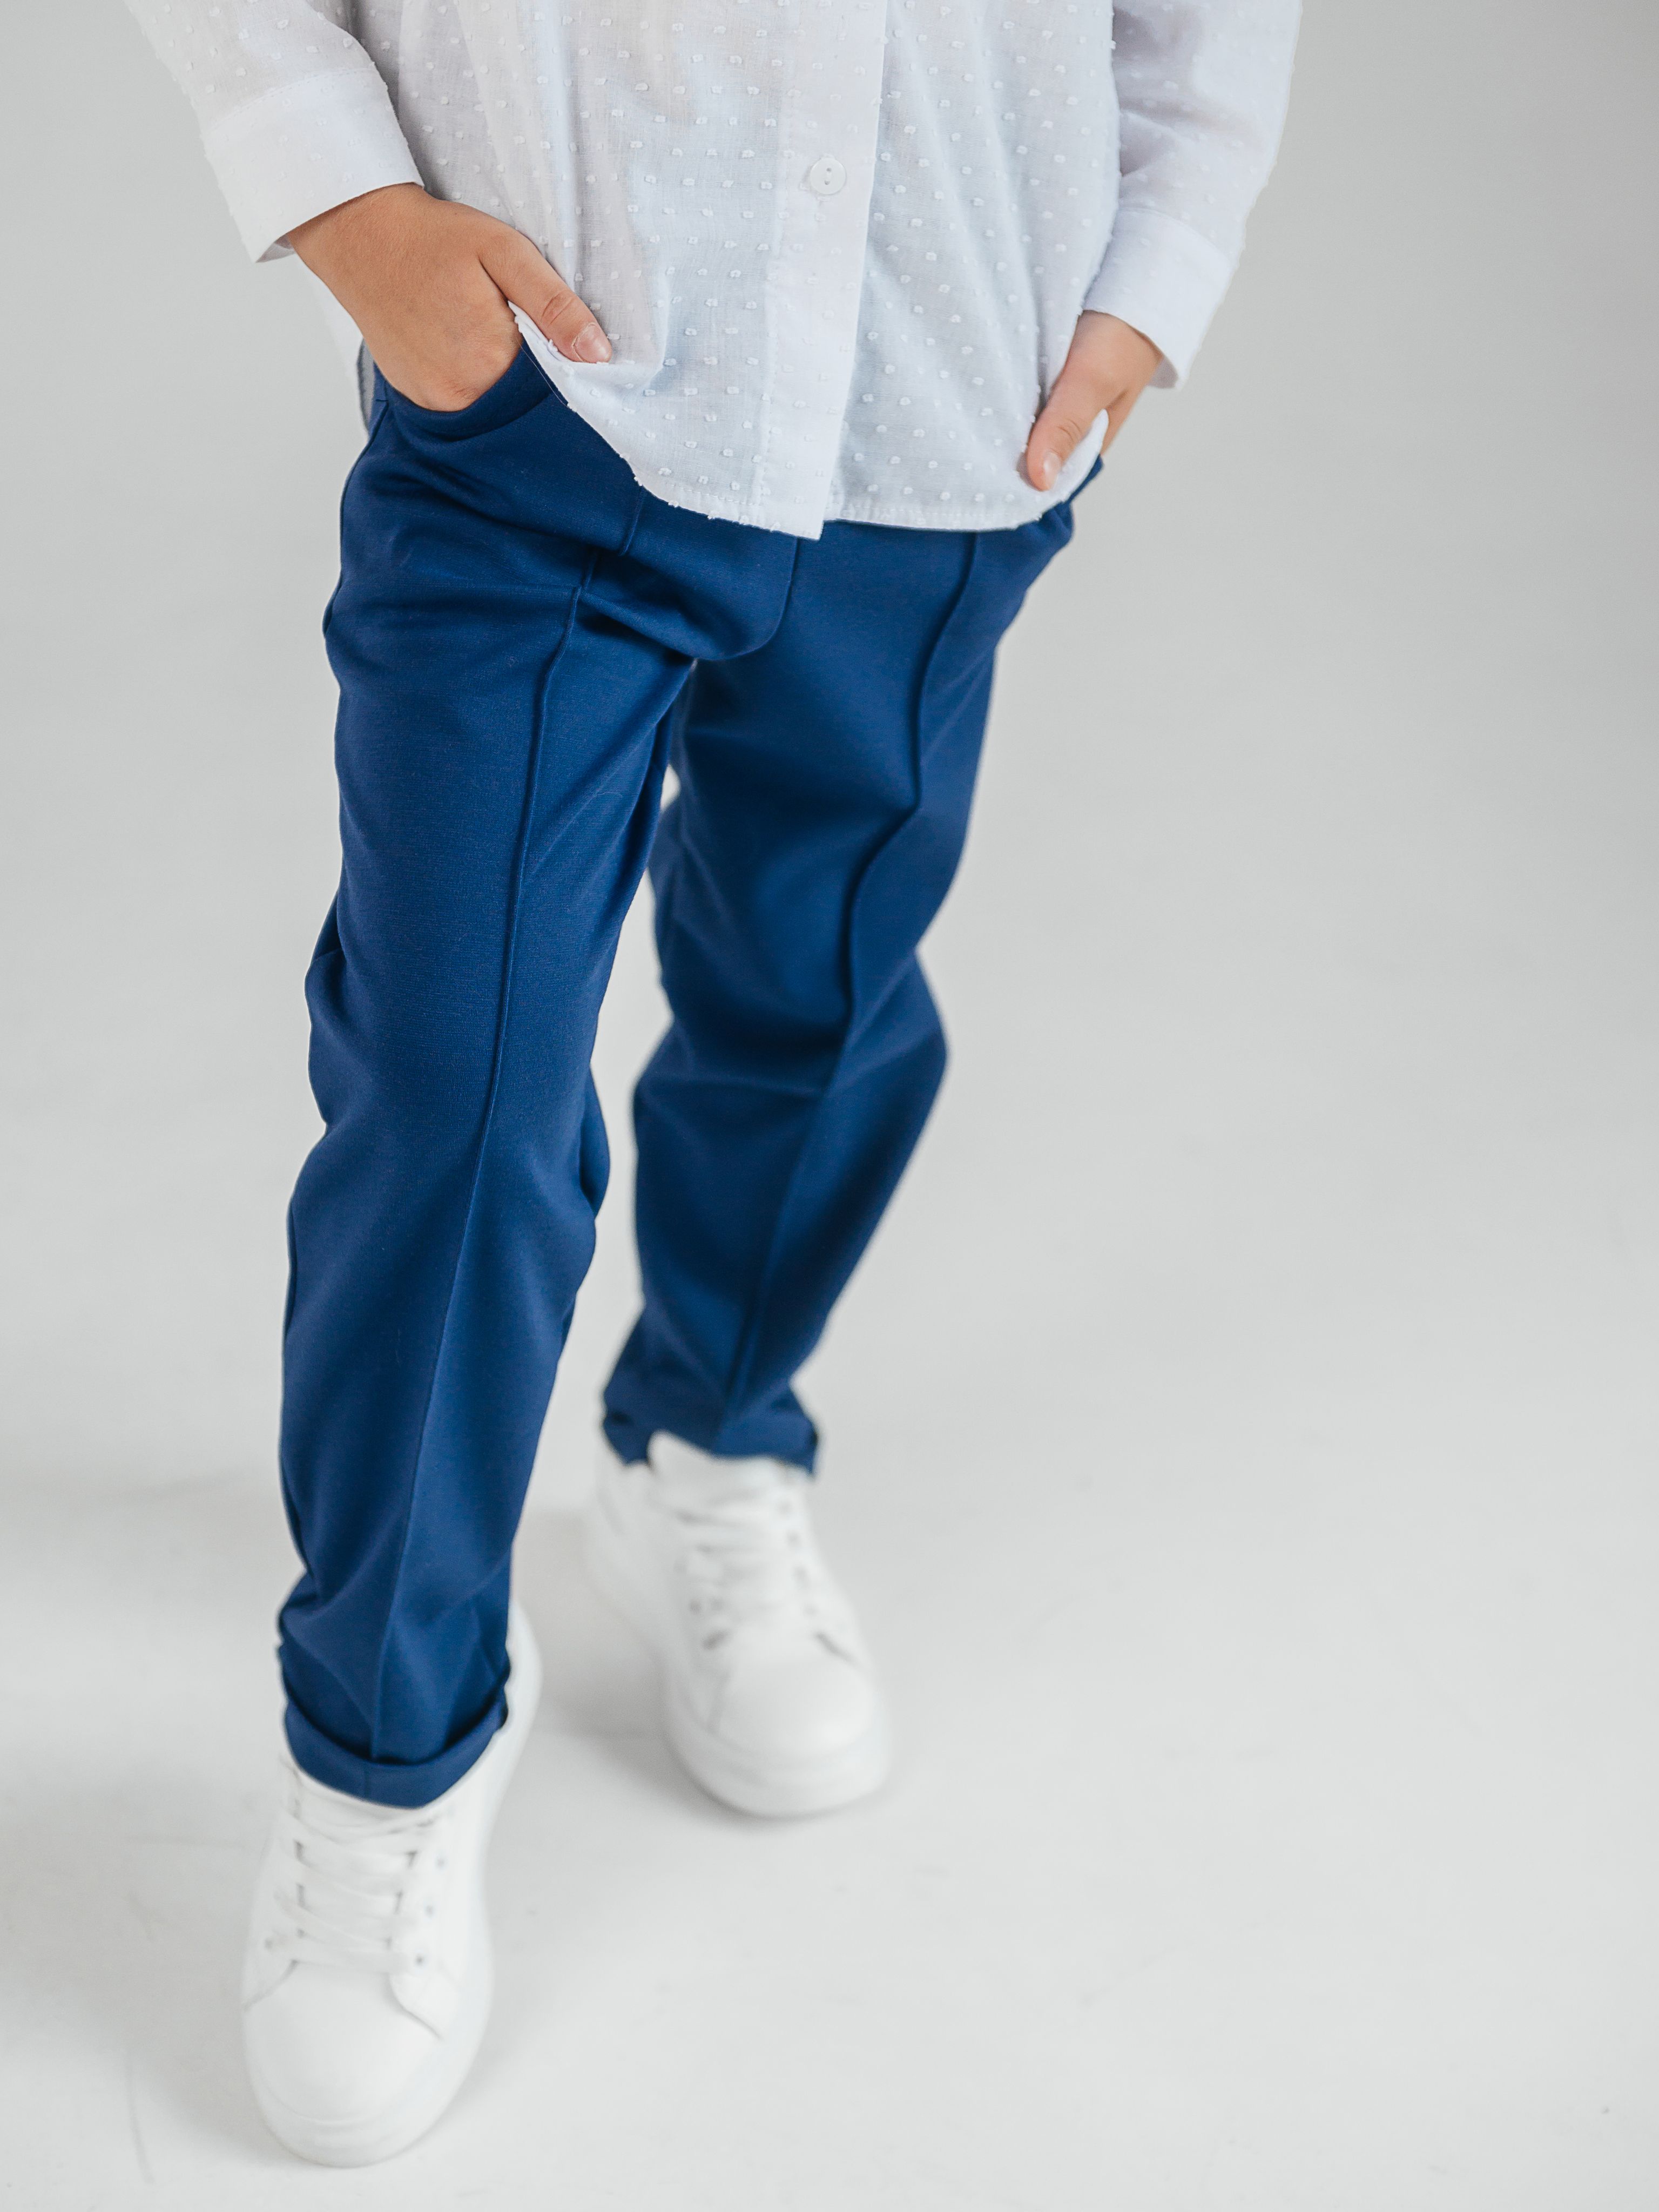 Школьные брюки на резинке для мальчика